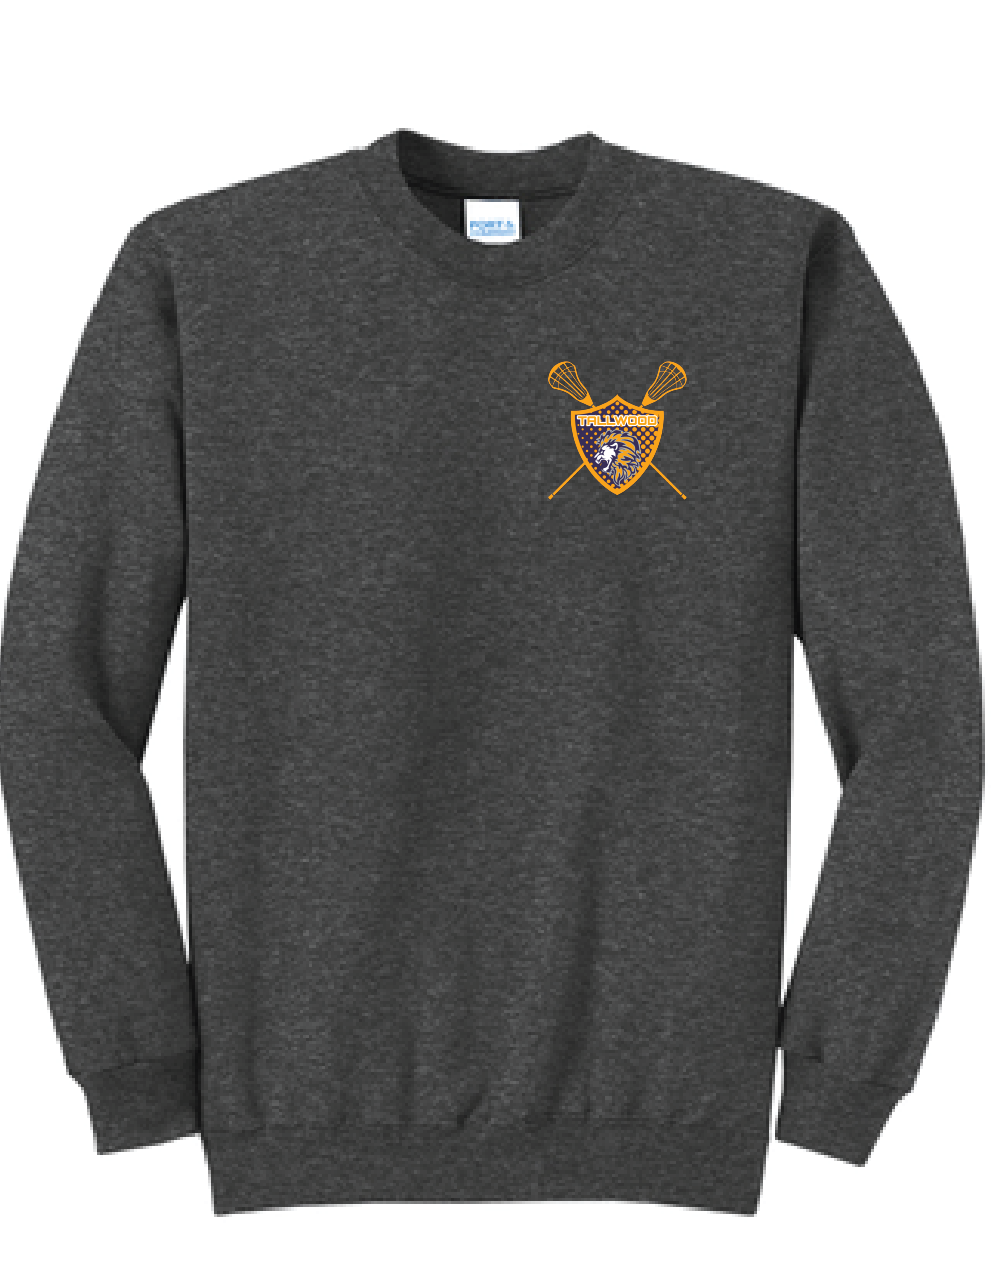 Fleece Crewneck Sweatshirt / Charcoal Heather / Tallwood High School Lacrosse